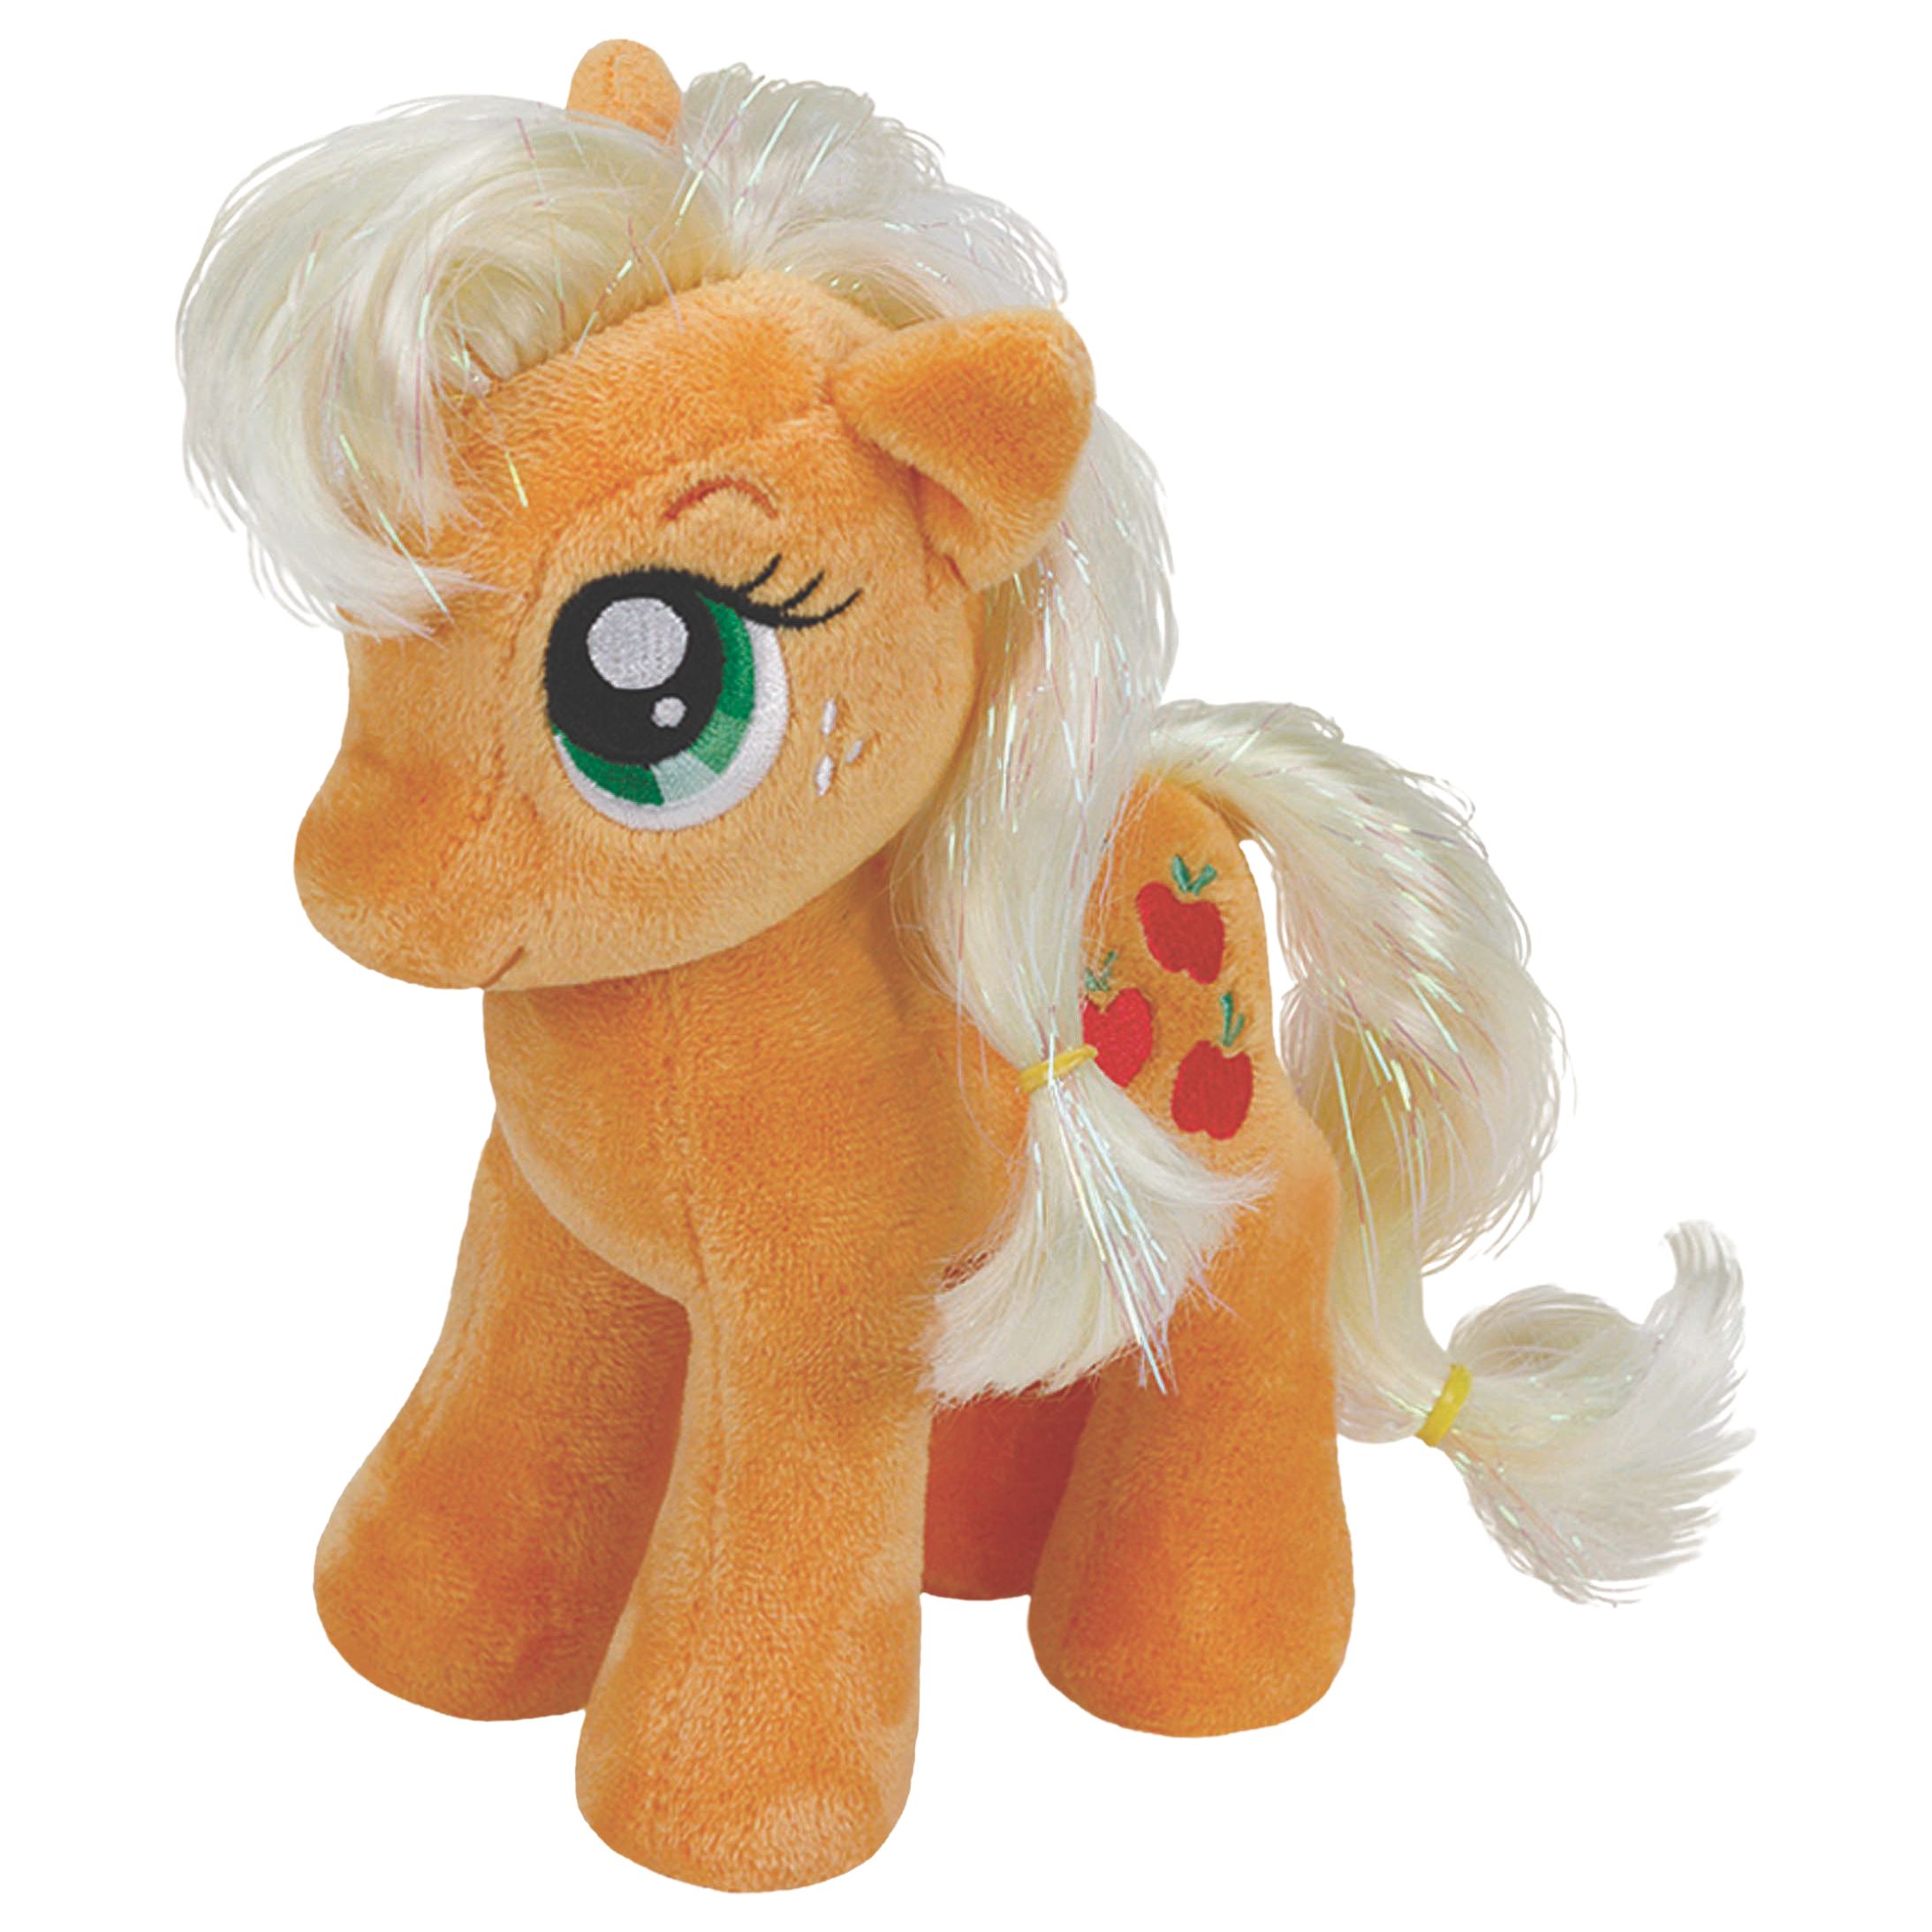 Ty My Little Pony Applejack Beanie Baby, 17cm